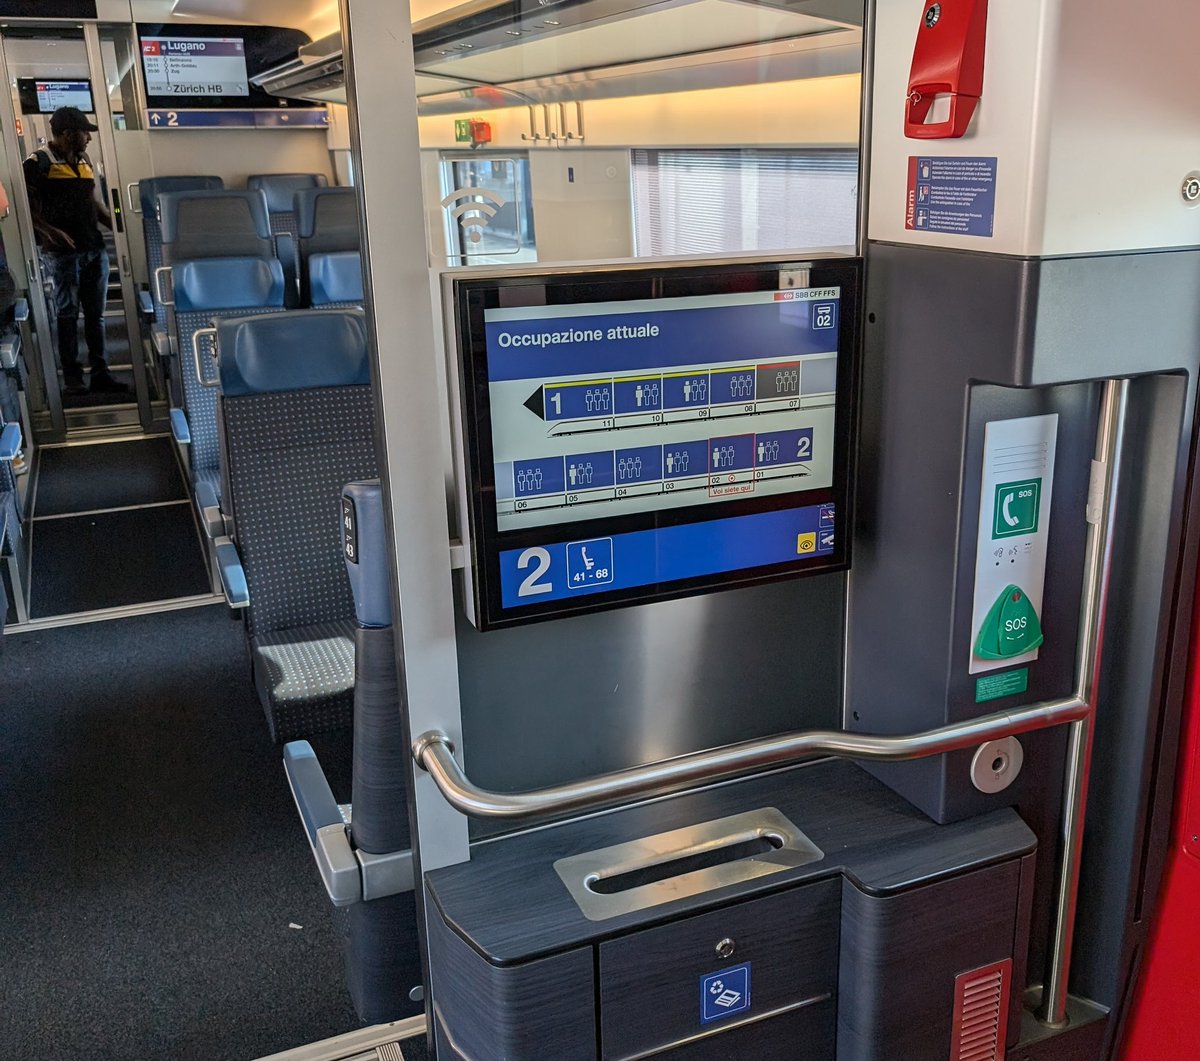 Stylé cet écran qui dit quelle voiture est plus ou moins remplie dans ce train Suisse, je me demande sur quoi ça se base